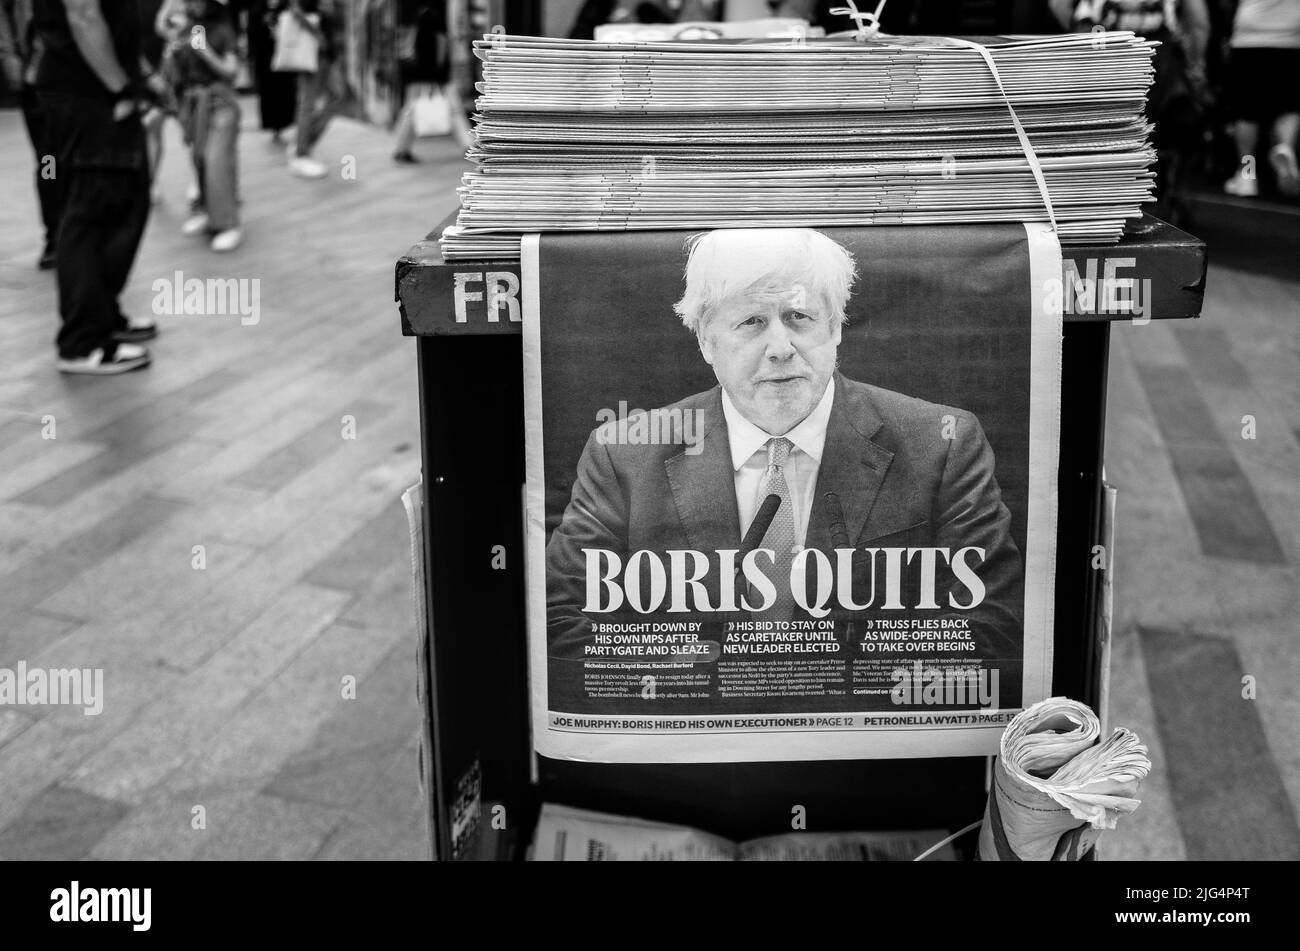 Premier ministre du Royaume-Uni, Boris Johnson Quits, Evening Standard Newspaper Front page titre sur les kiosques à journaux à Londres, Royaume-Uni Banque D'Images